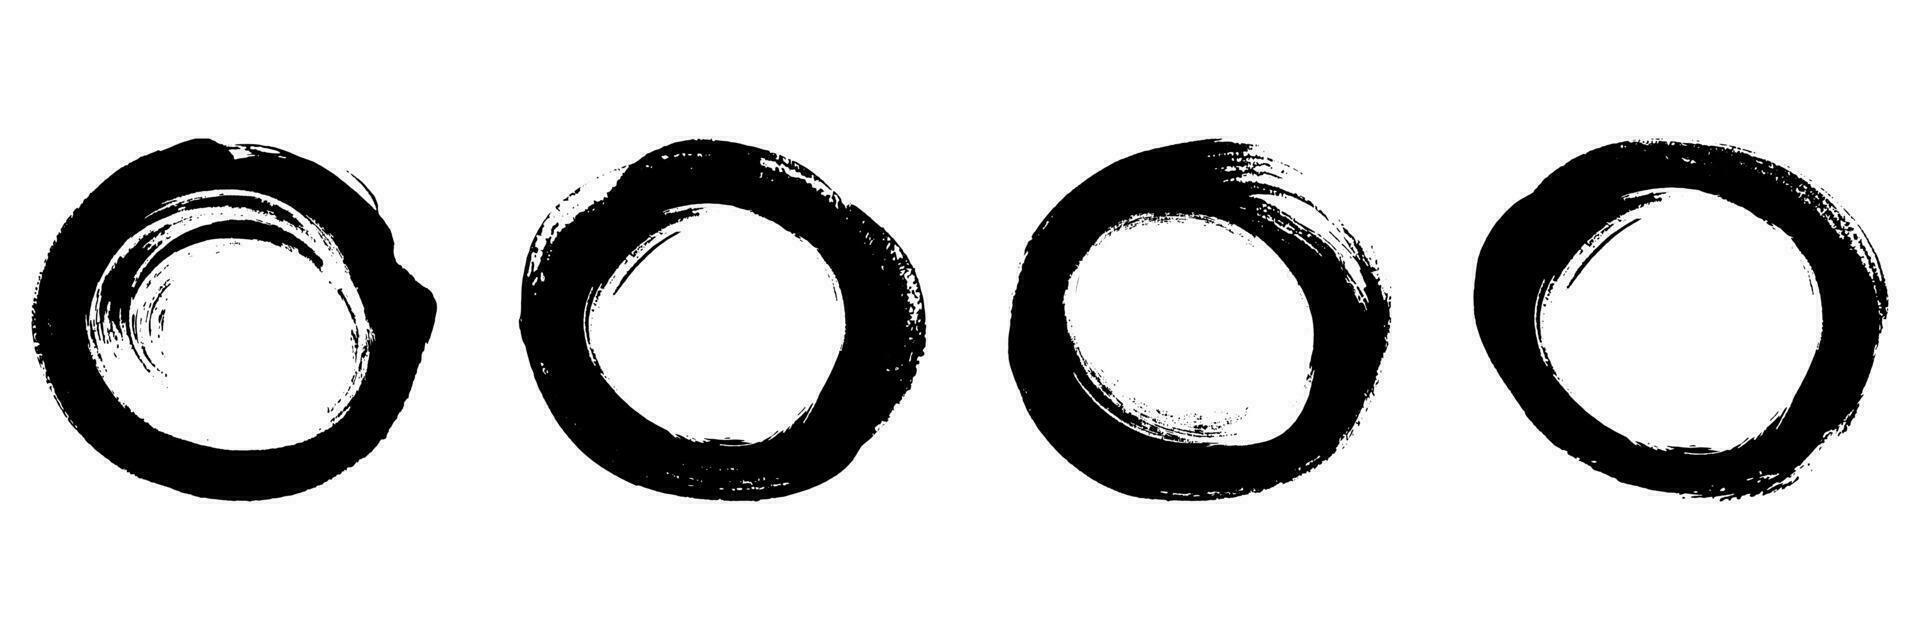 vuil cirkel borstel symbool verzameling. ronde vorm beroerte inkt kader, grunge verf set. abstract zwart circulaire ontwerp, postzegel grafisch element. geïsoleerd vector illustratie.